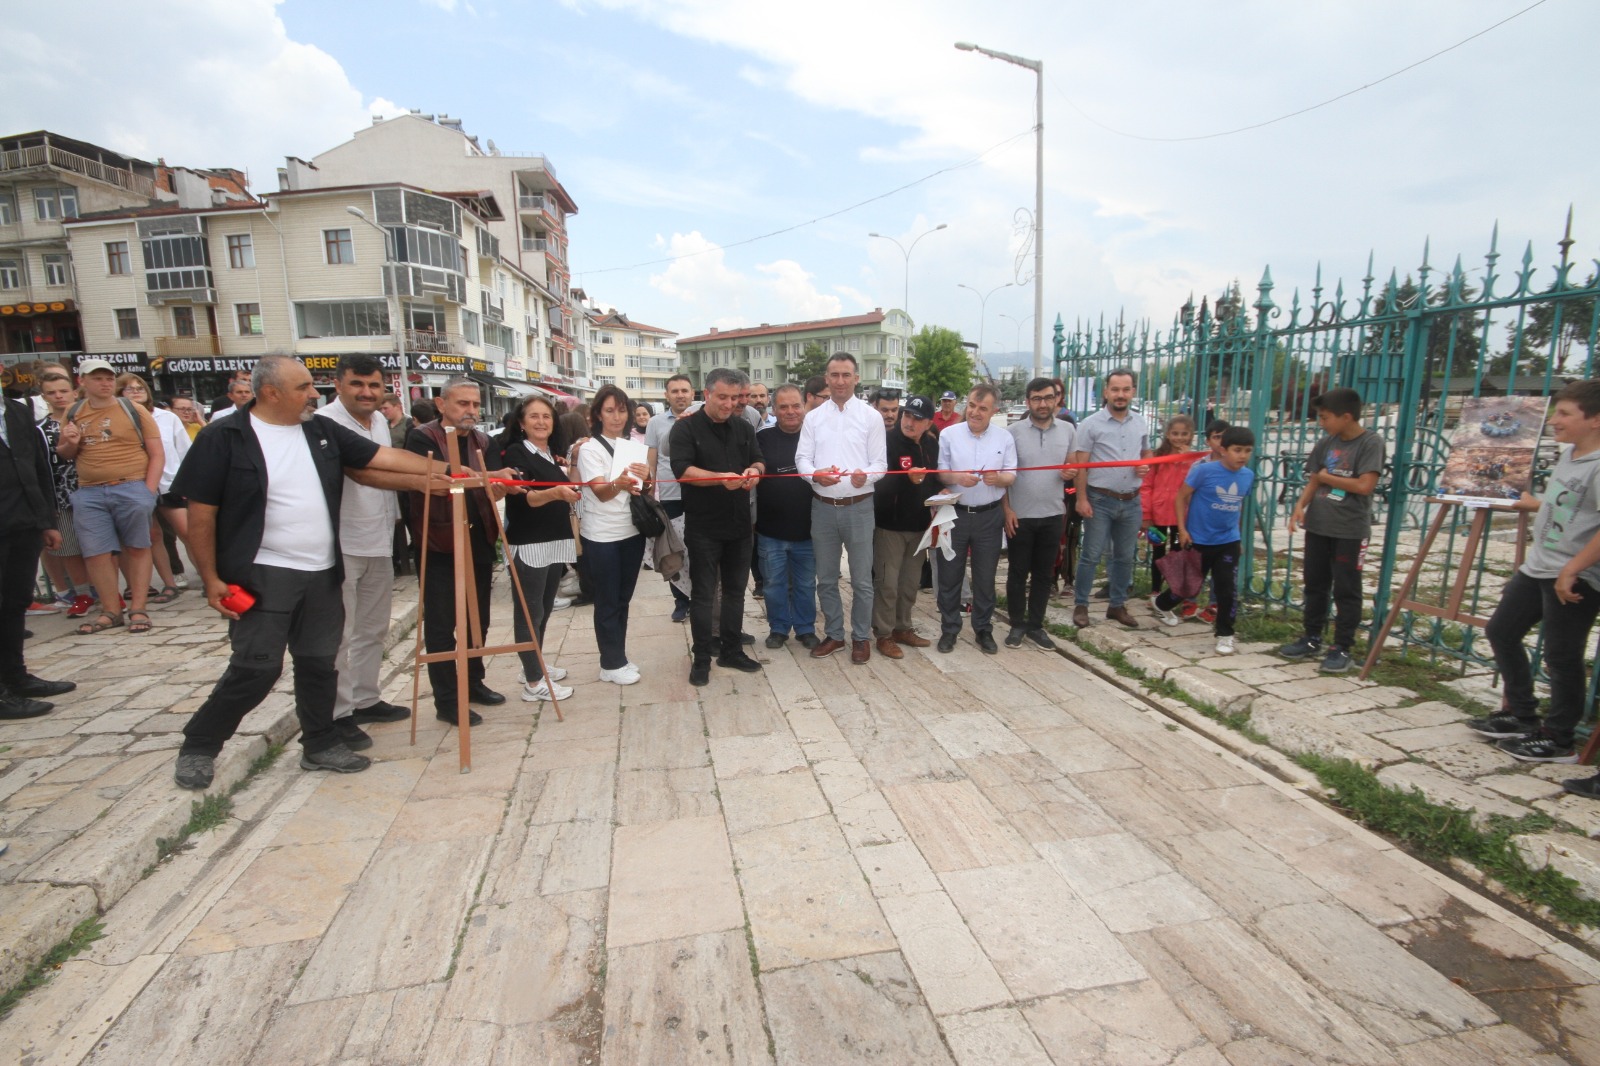 Beyşehir'de çevre konulu fotoğraf sergisi açıldı